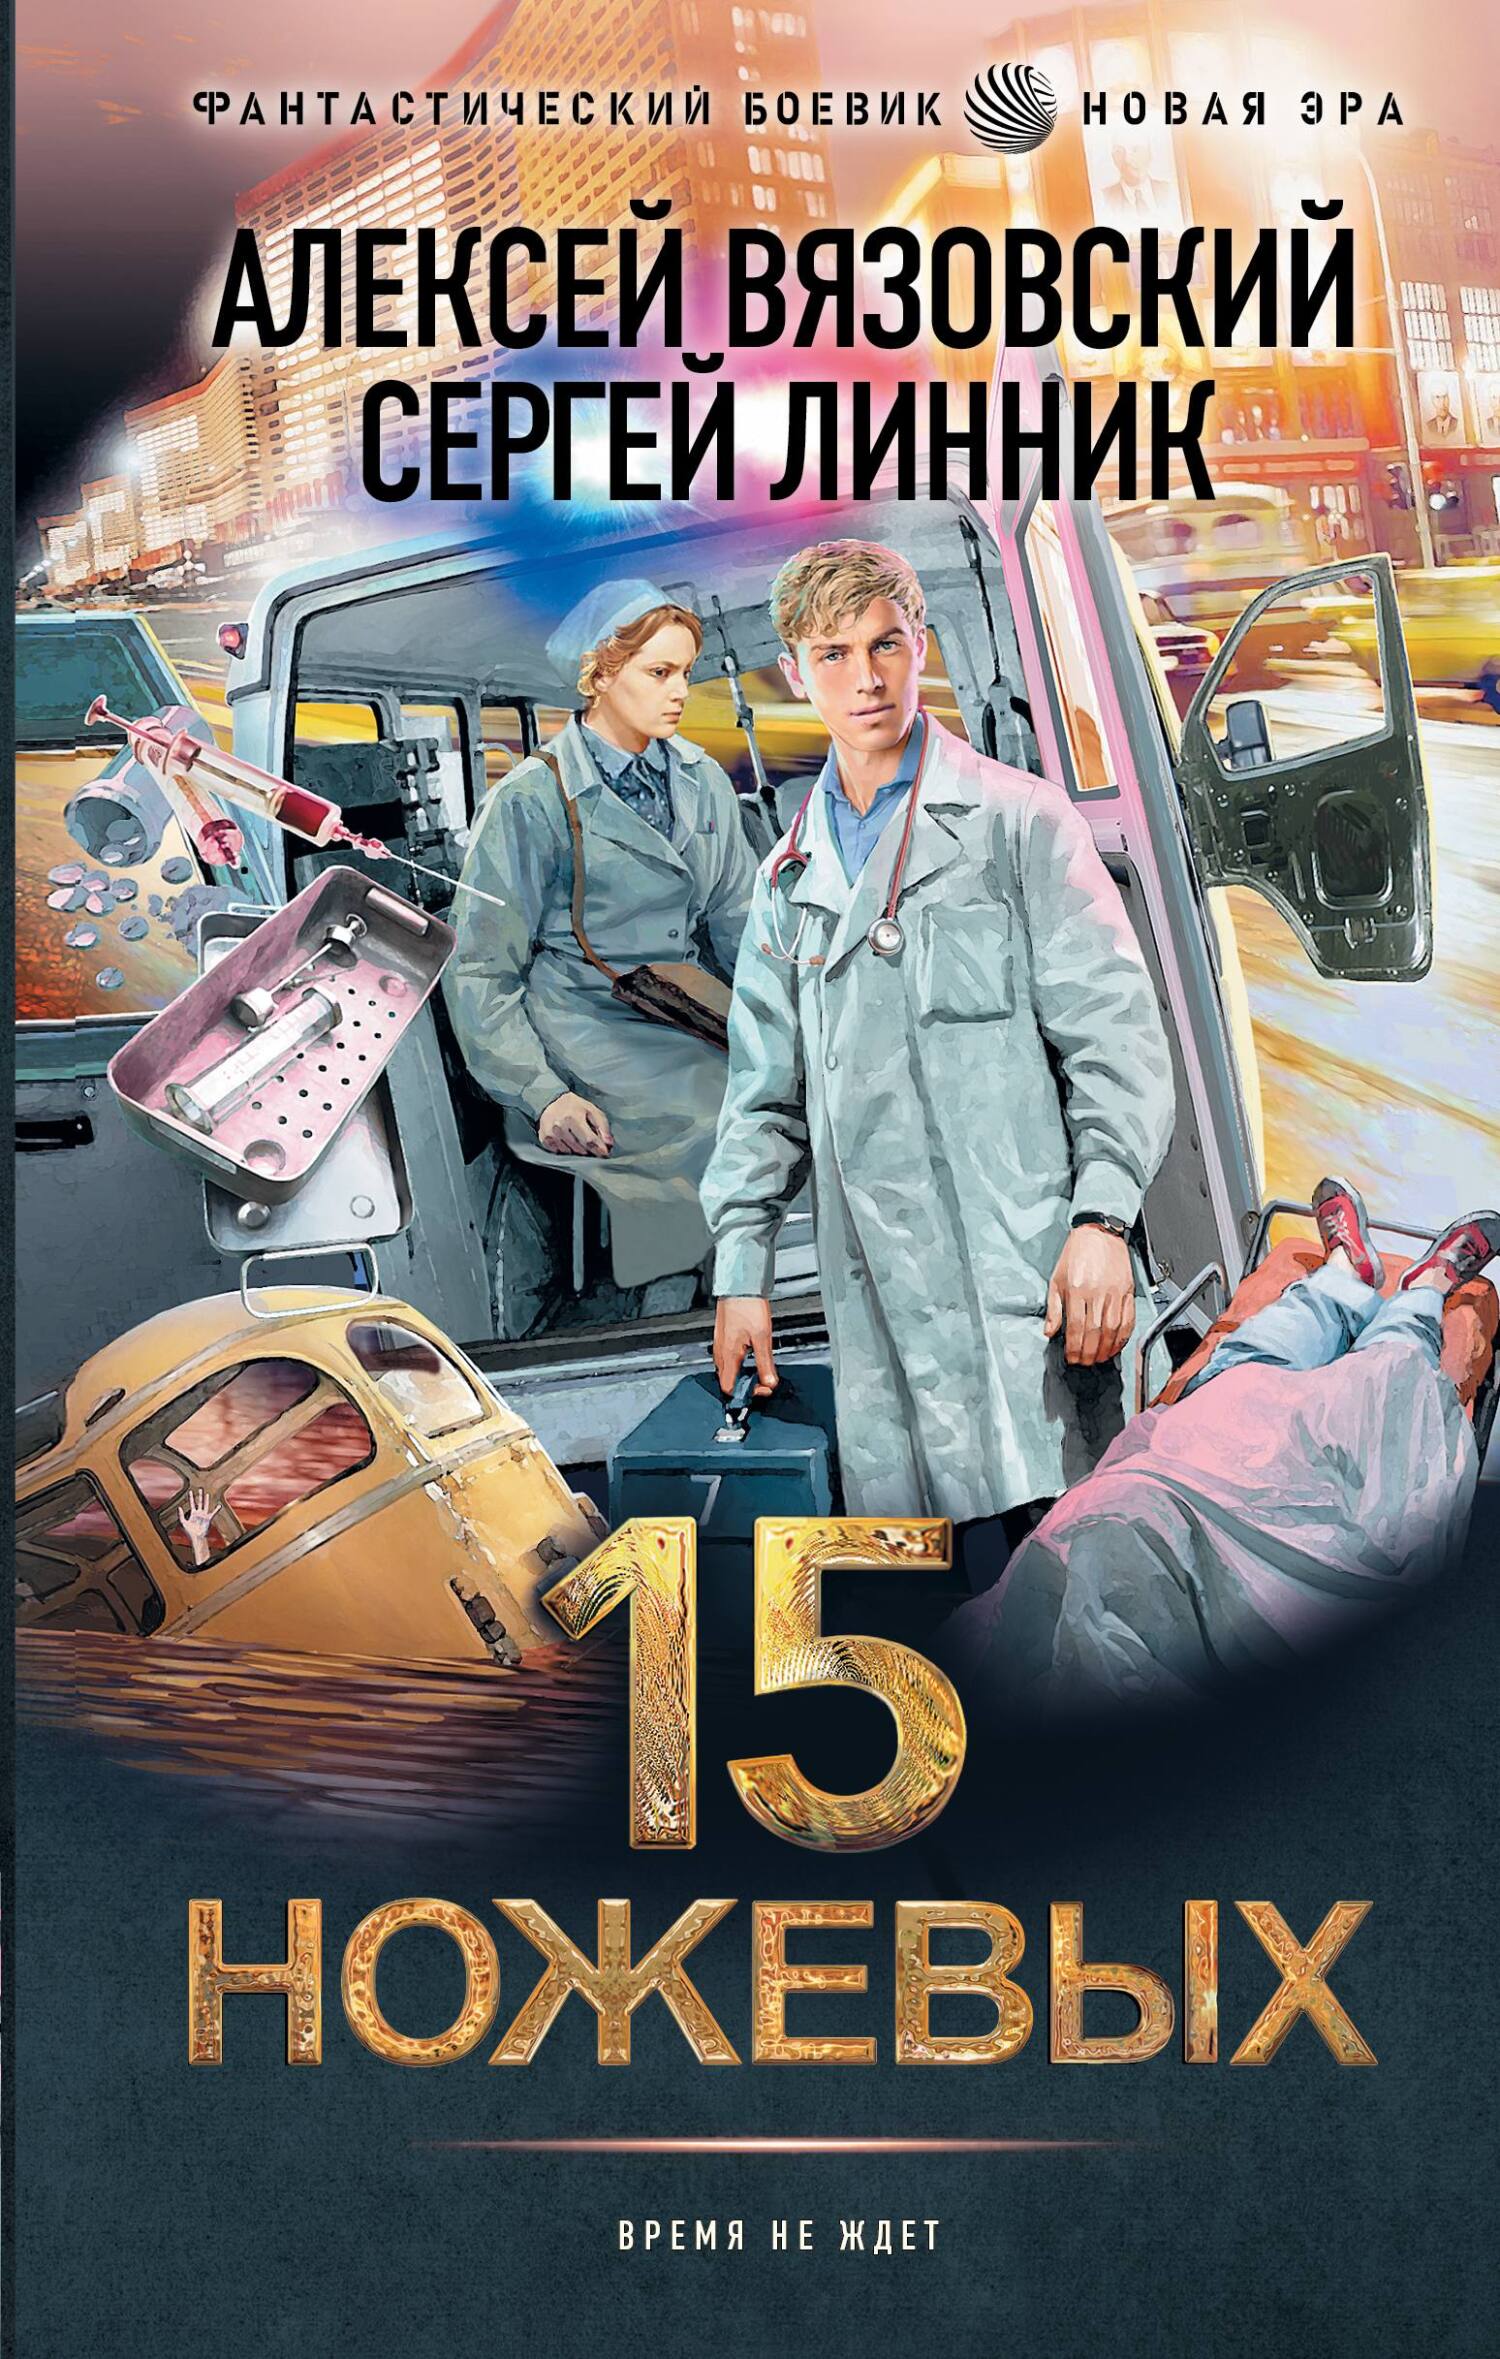 15 ножевых - Сергей Линник